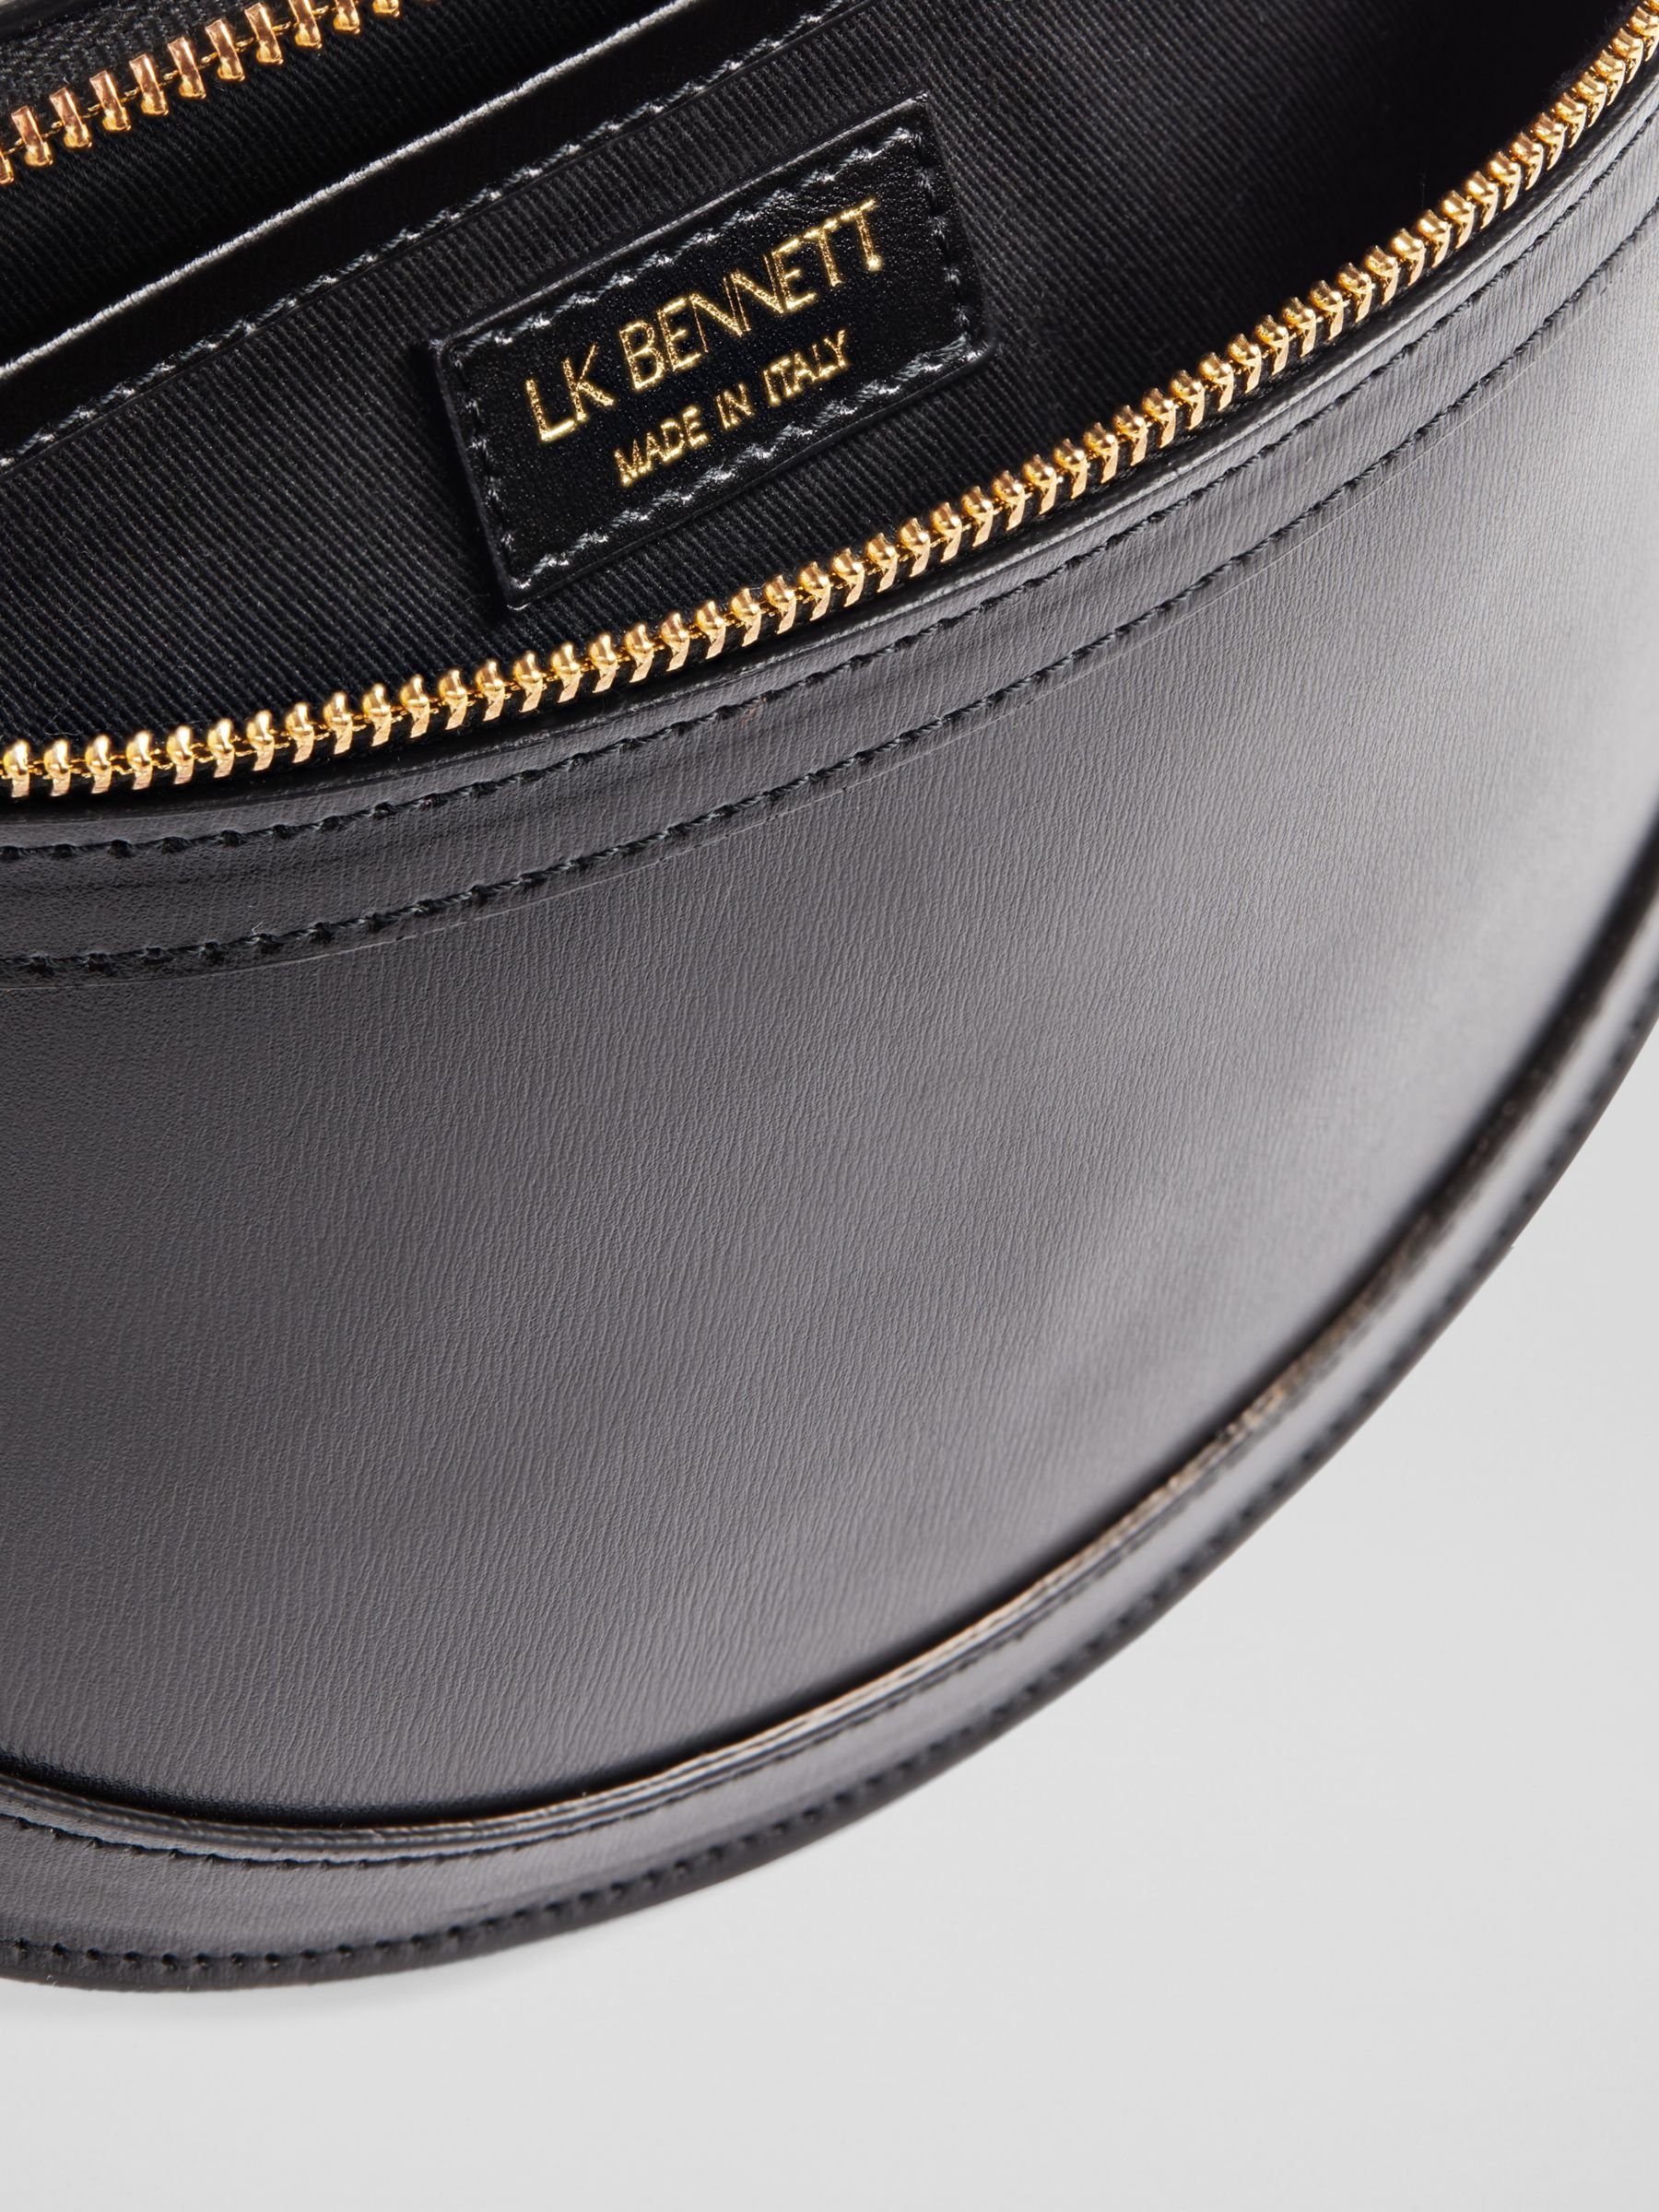 Buy L.K.Bennett Greta Leather Cross Body Bag Online at johnlewis.com